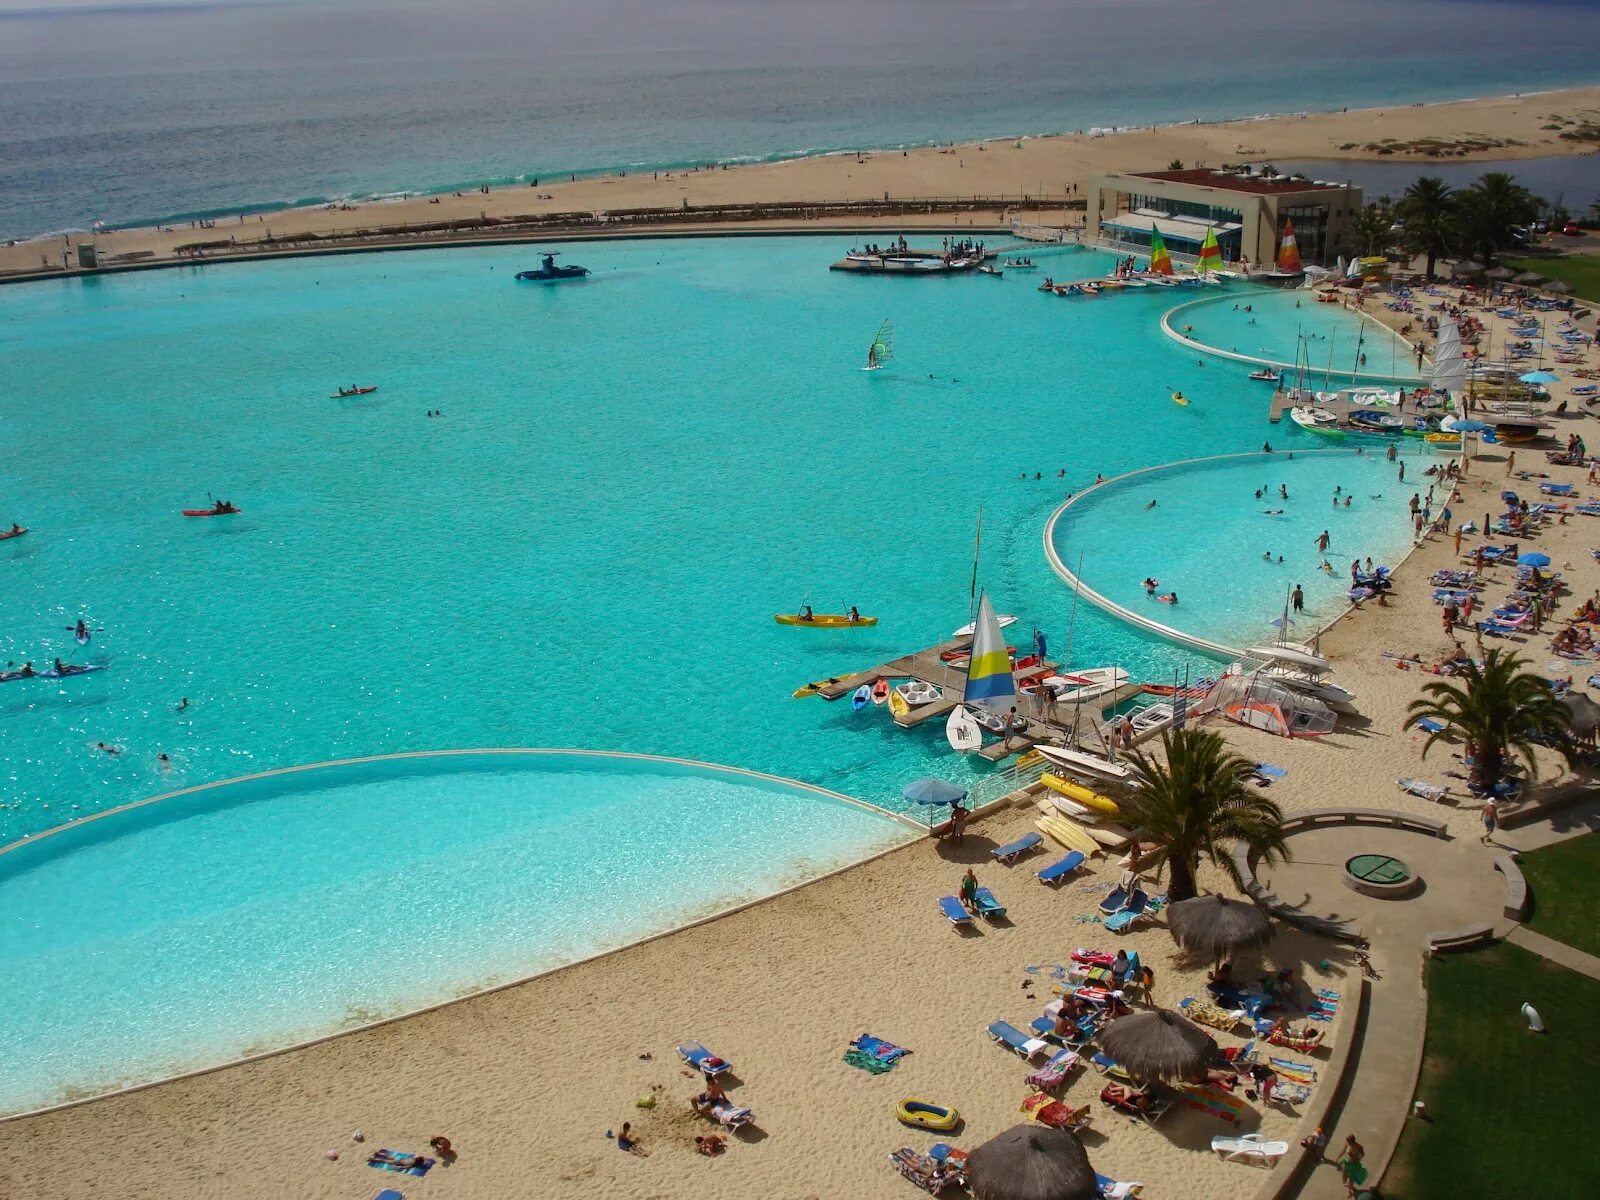 Самый большой бассейн. Самый большой бассейн в Мексике. Самый большой искусственный бассейн в мире. Самый большой бассейн в Египте. Самый большой искусственный бассейн Чили.